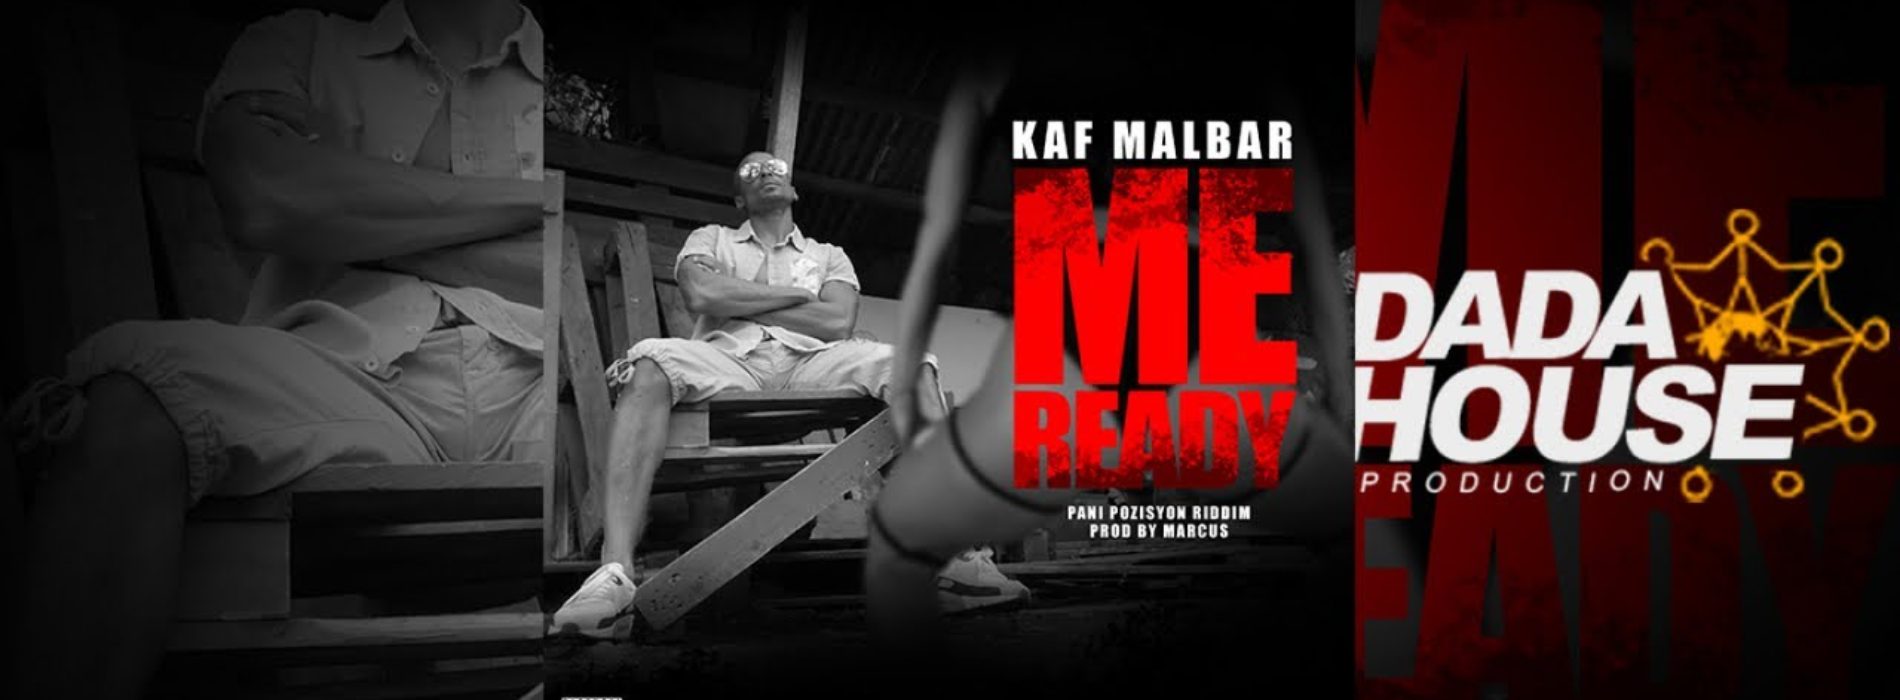 KAF MALBAR – Me Ready (Pani Pozisyon Riddim by Marcus) [Parental Advisory] – Août 2018